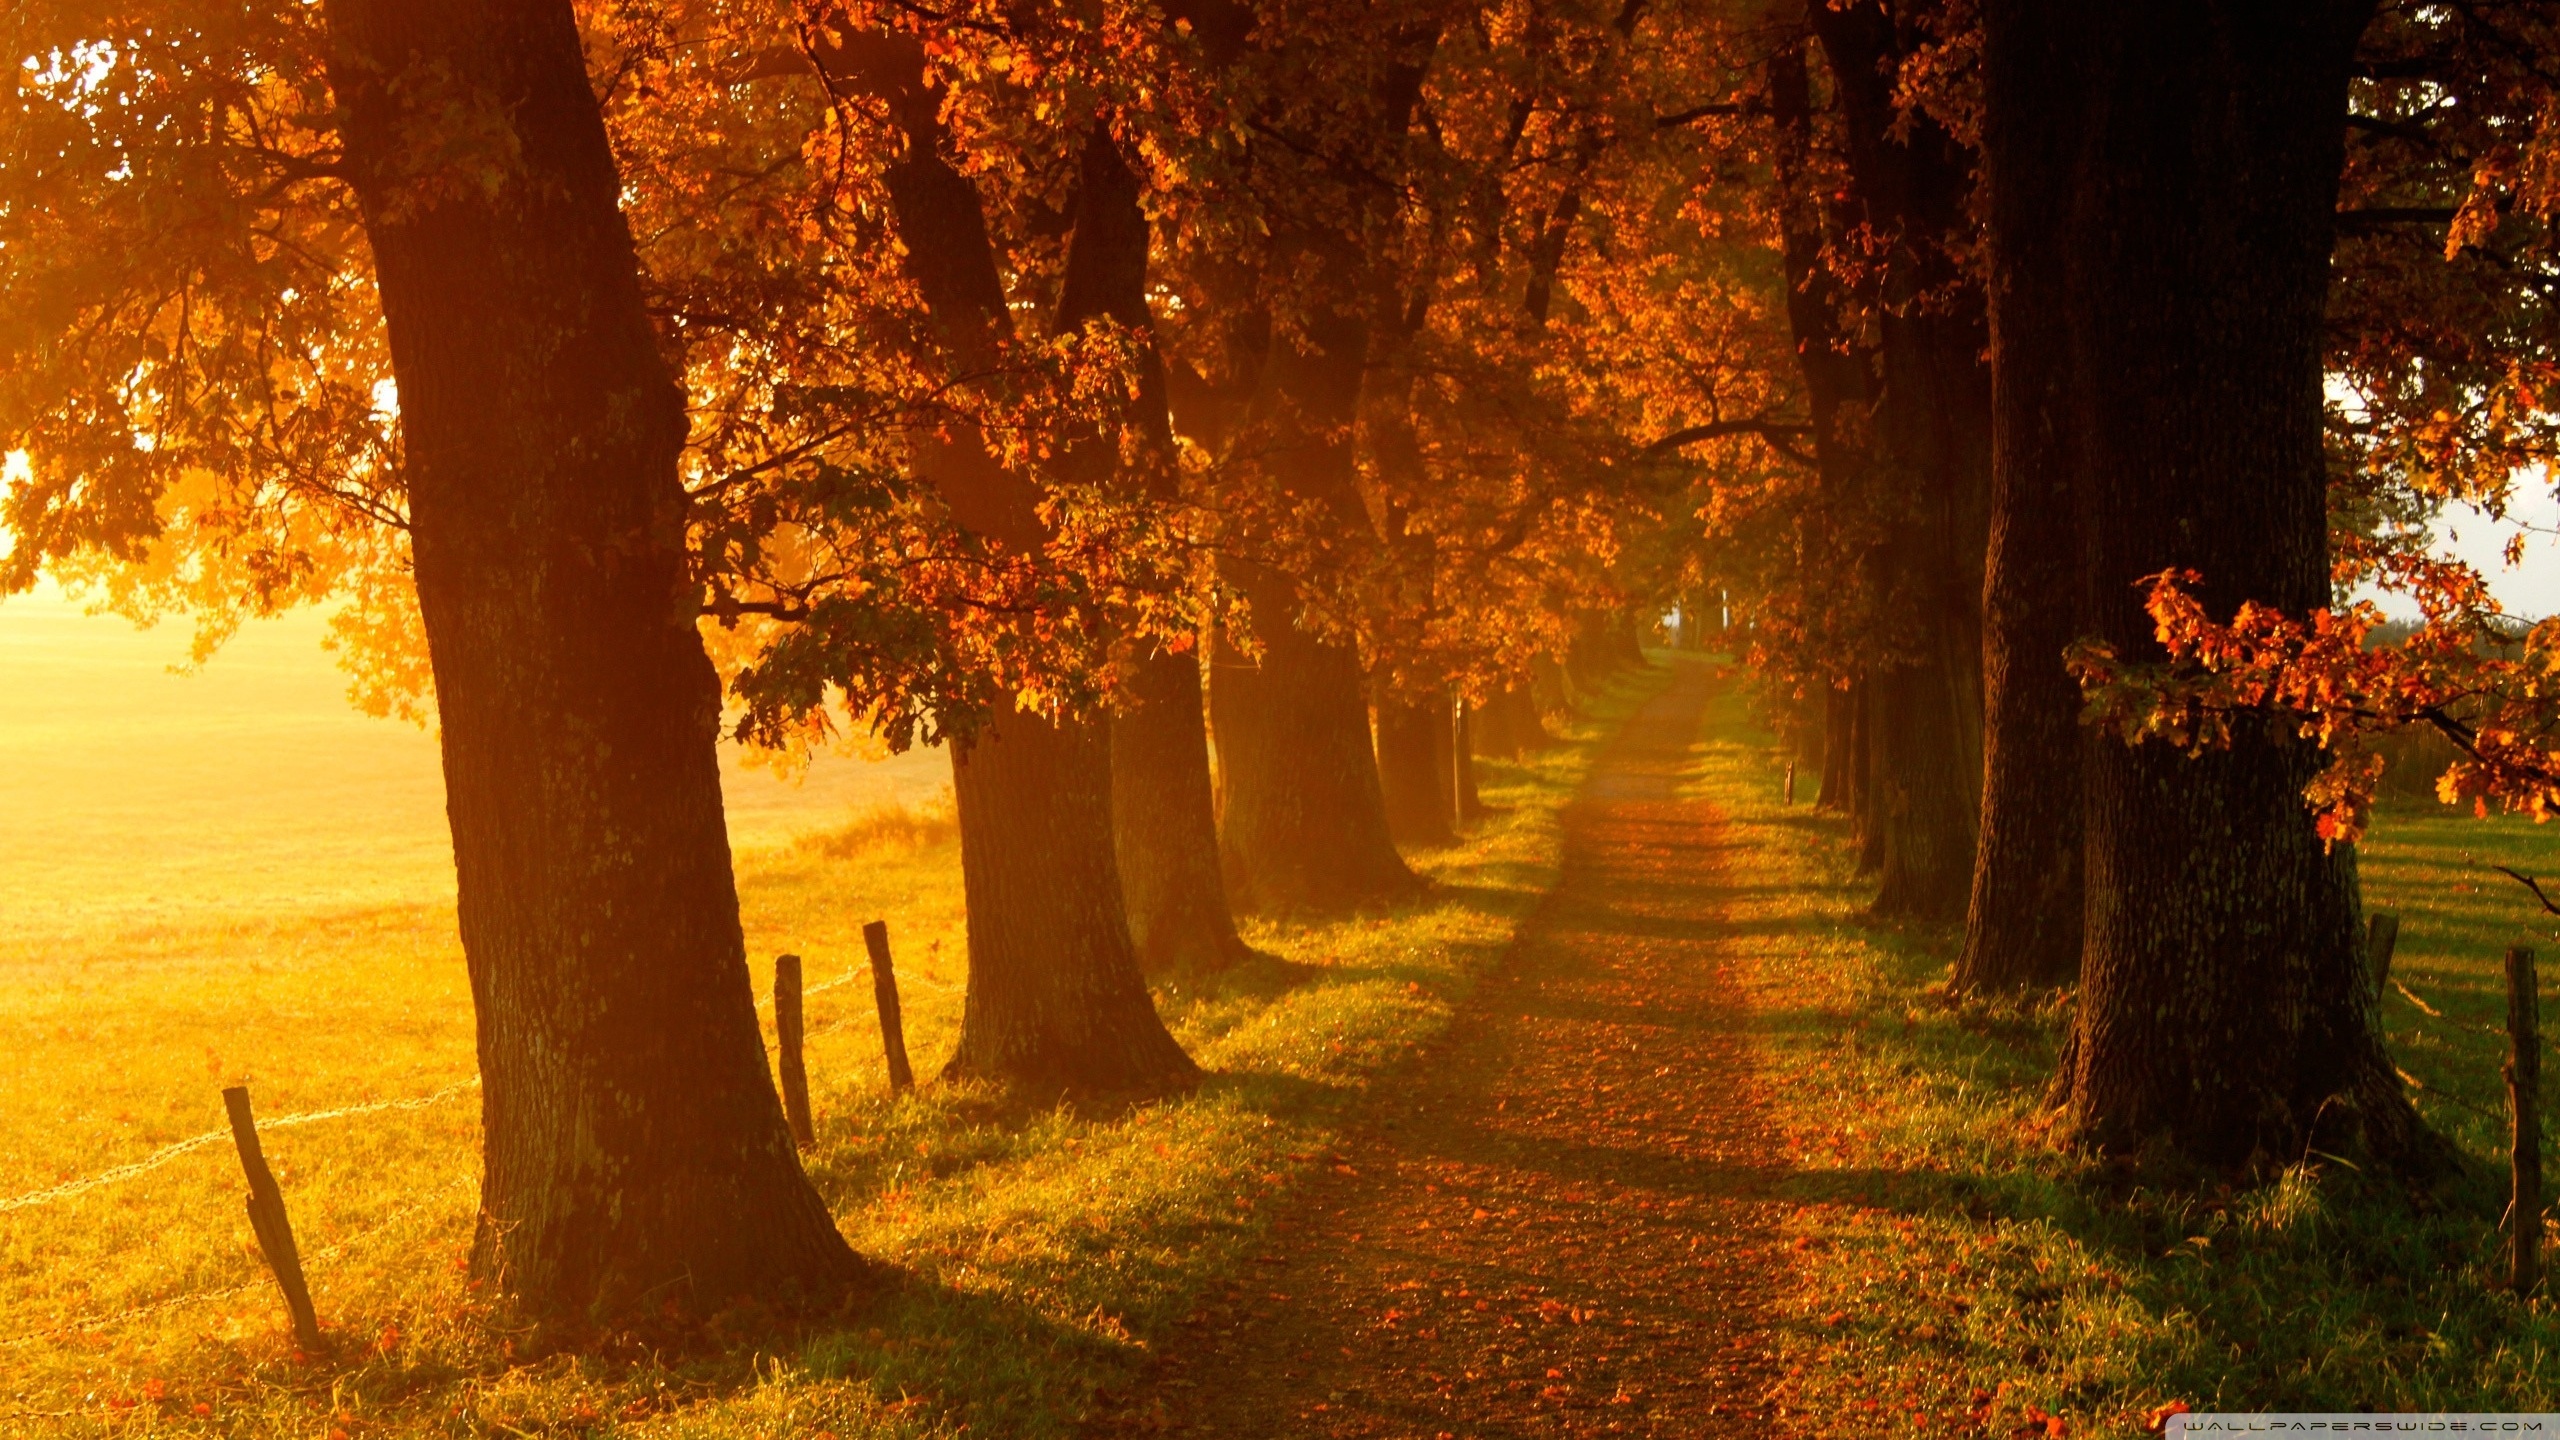 Autumn Walk HD desktop wallpaper : High Definition : Fullscreen ...